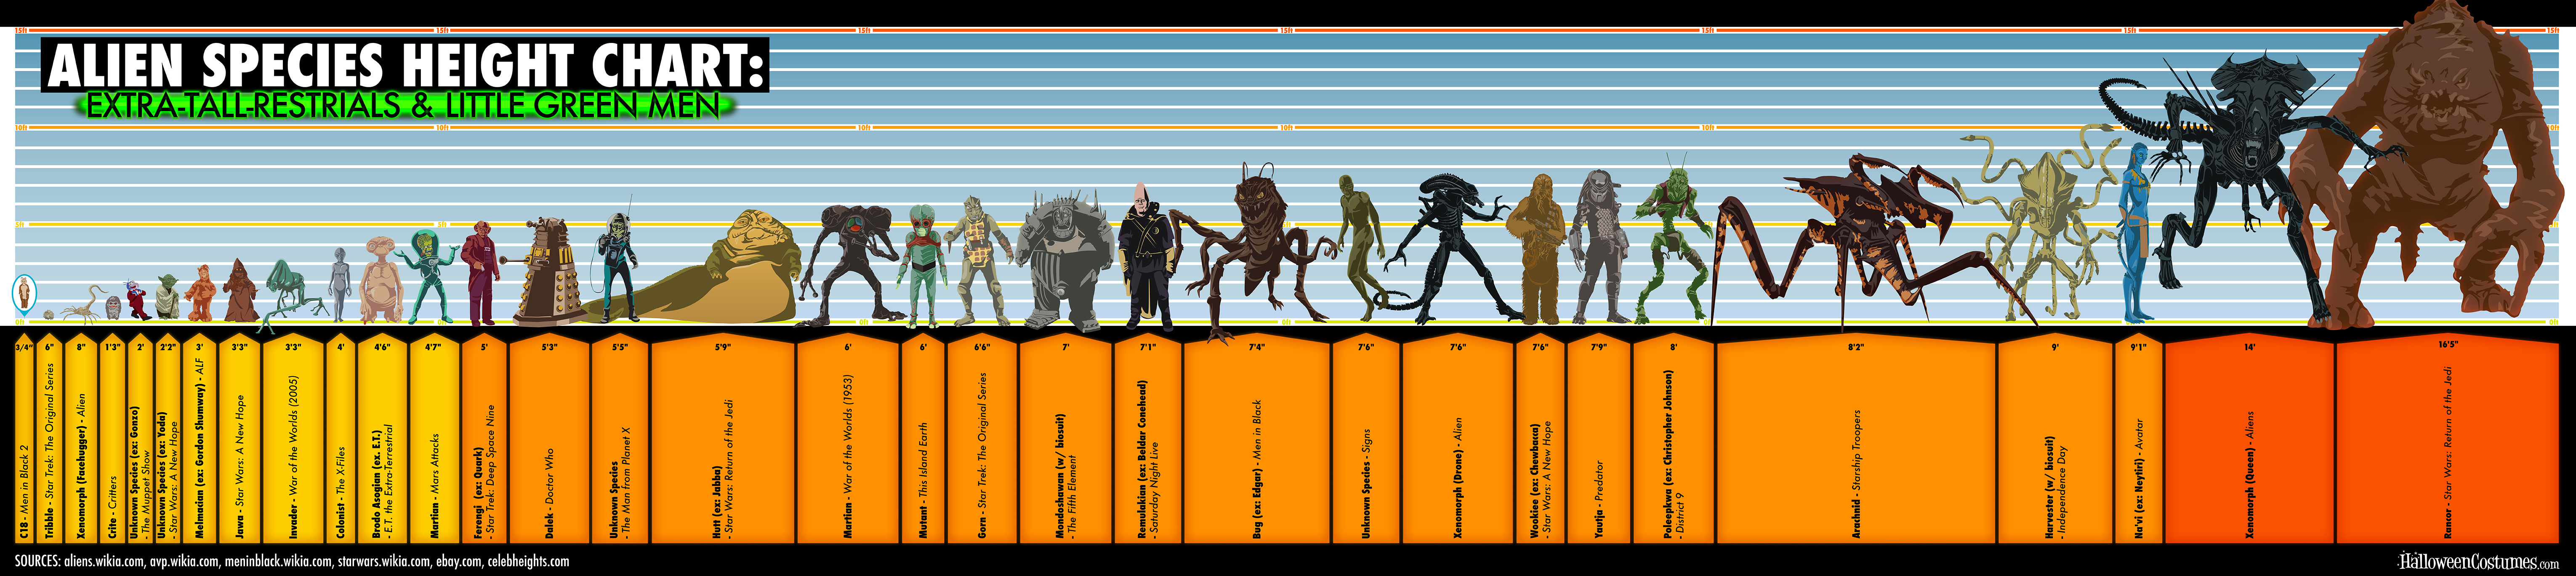 Alien Species Chart